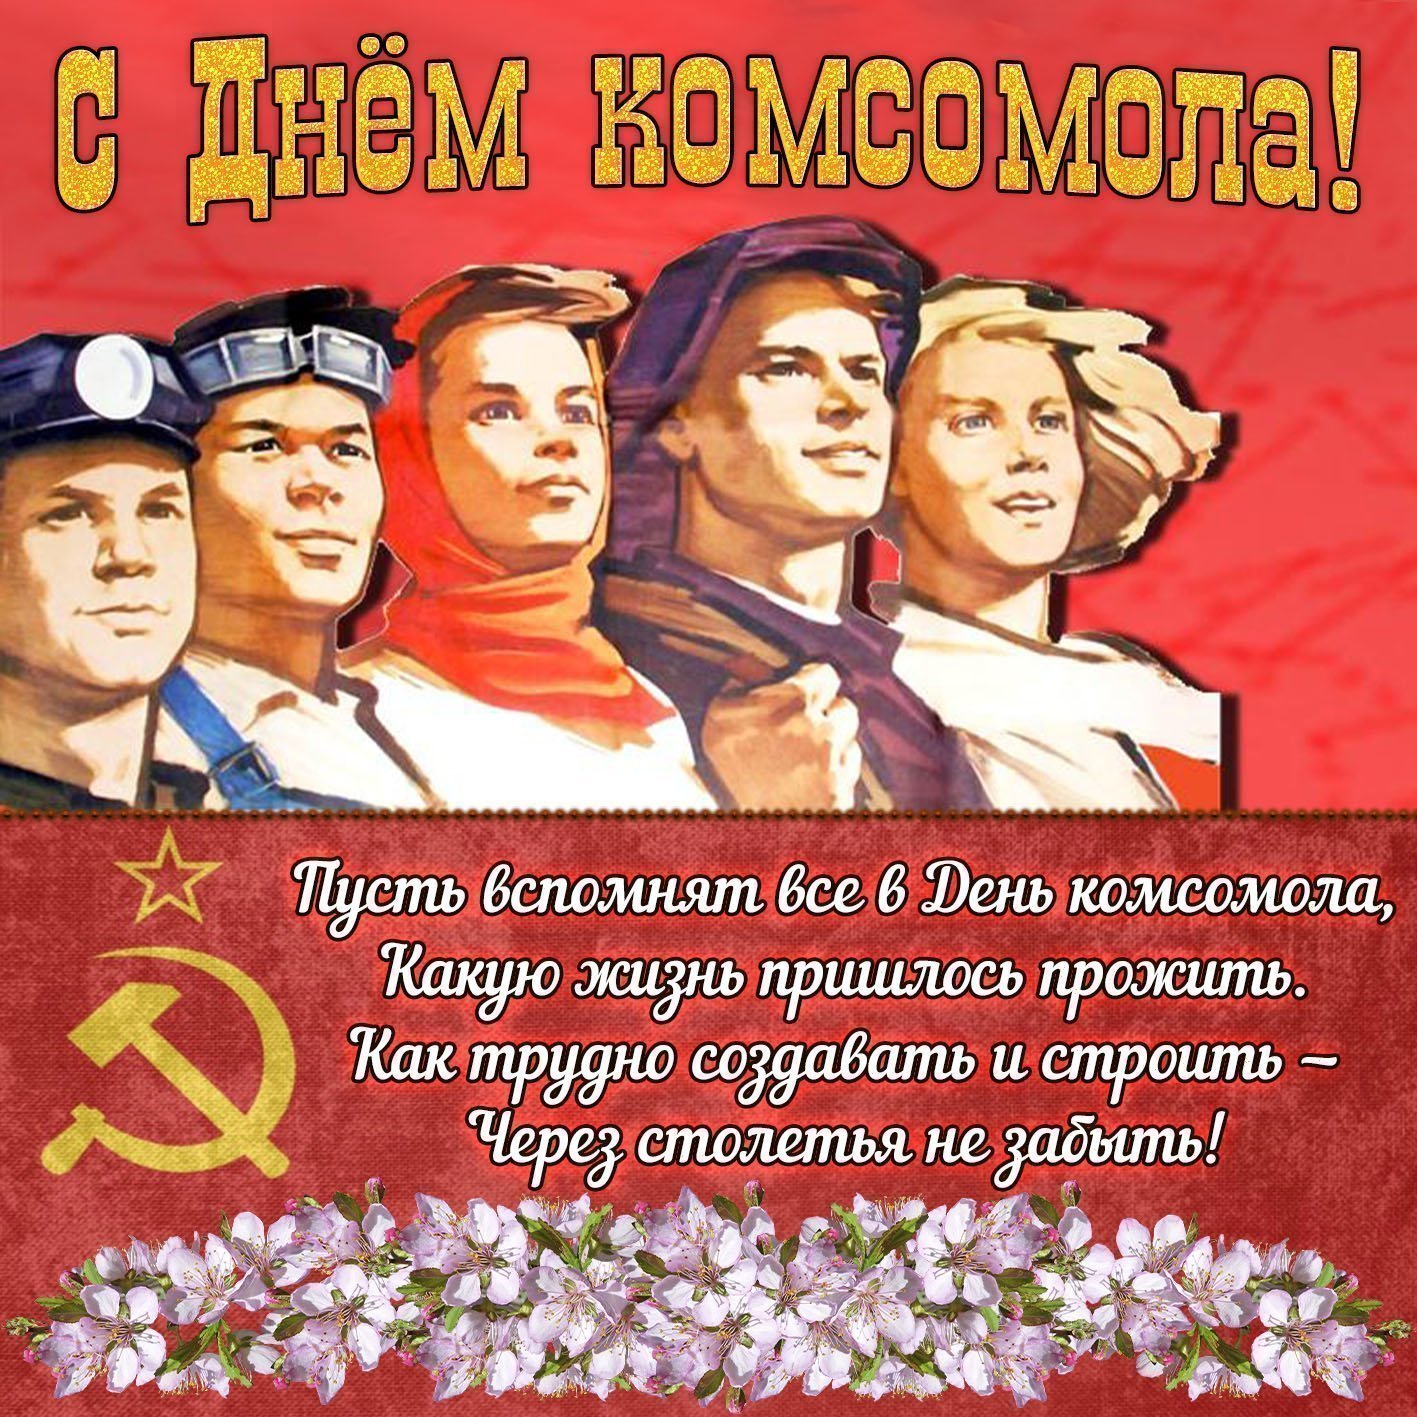 Поздравление Бывших Комсомольцев С Днем Комсомола